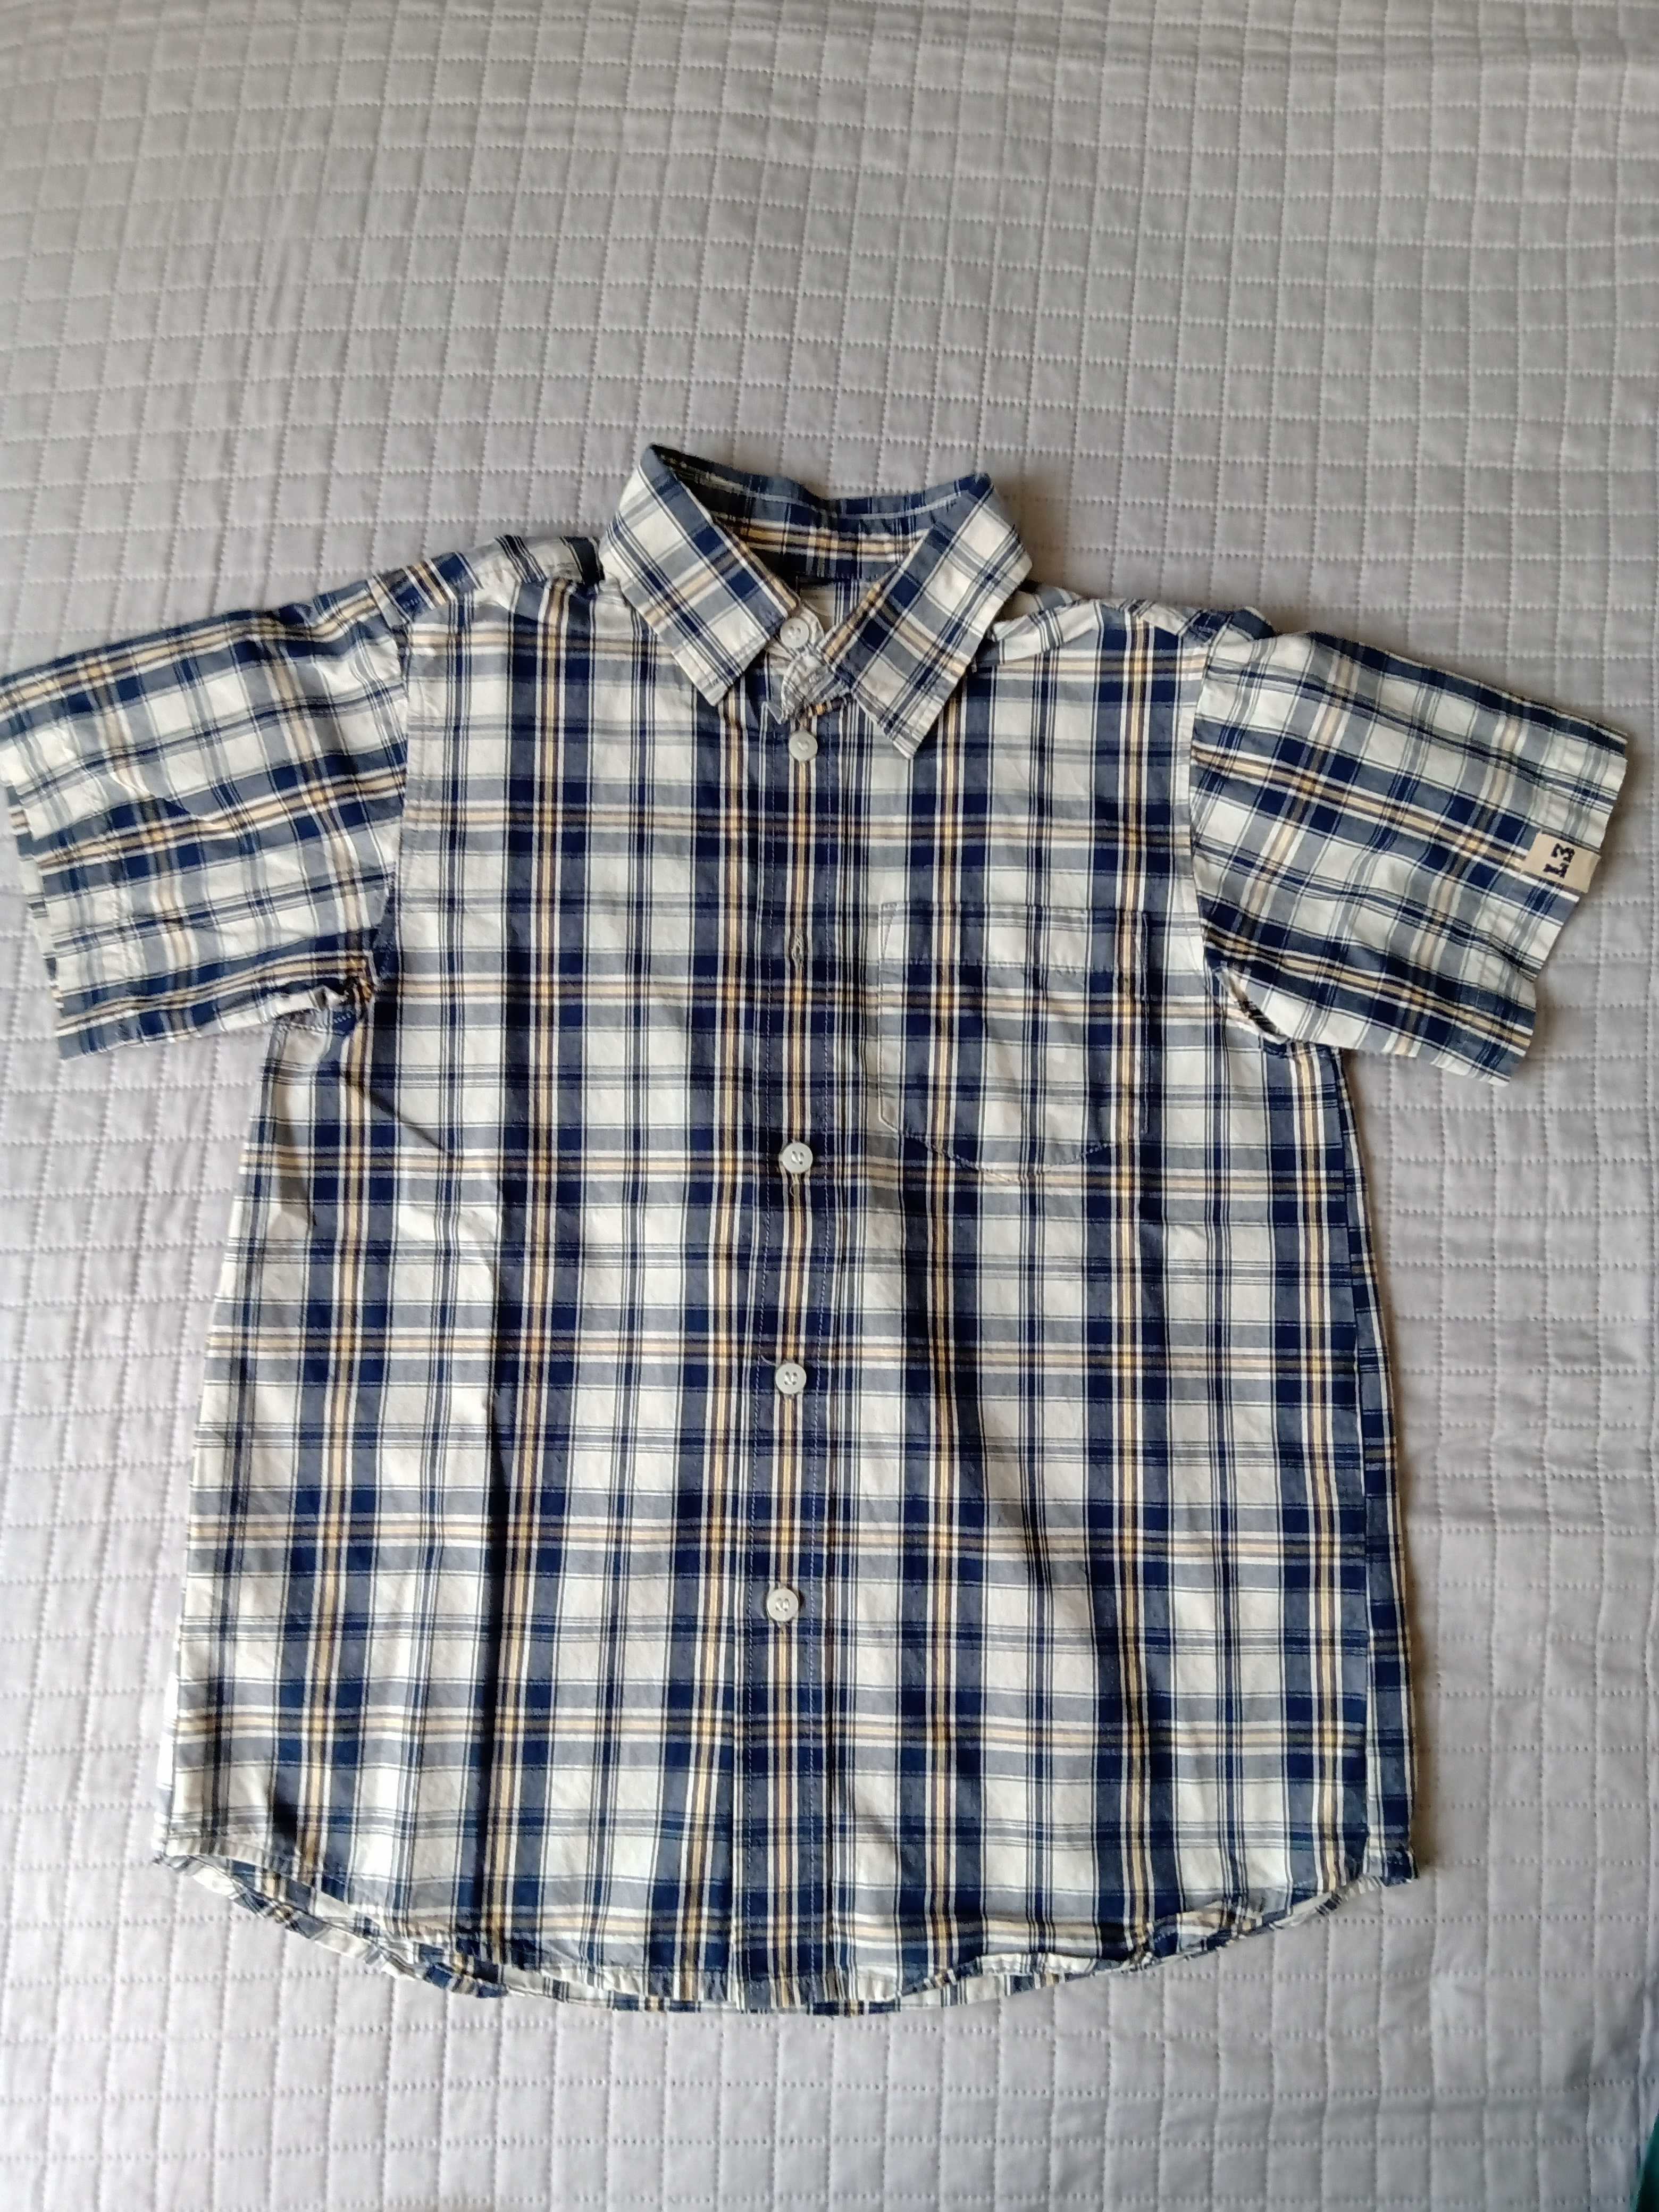 Koszule chłopięce z krótkim rękawem rozmiar 134-140